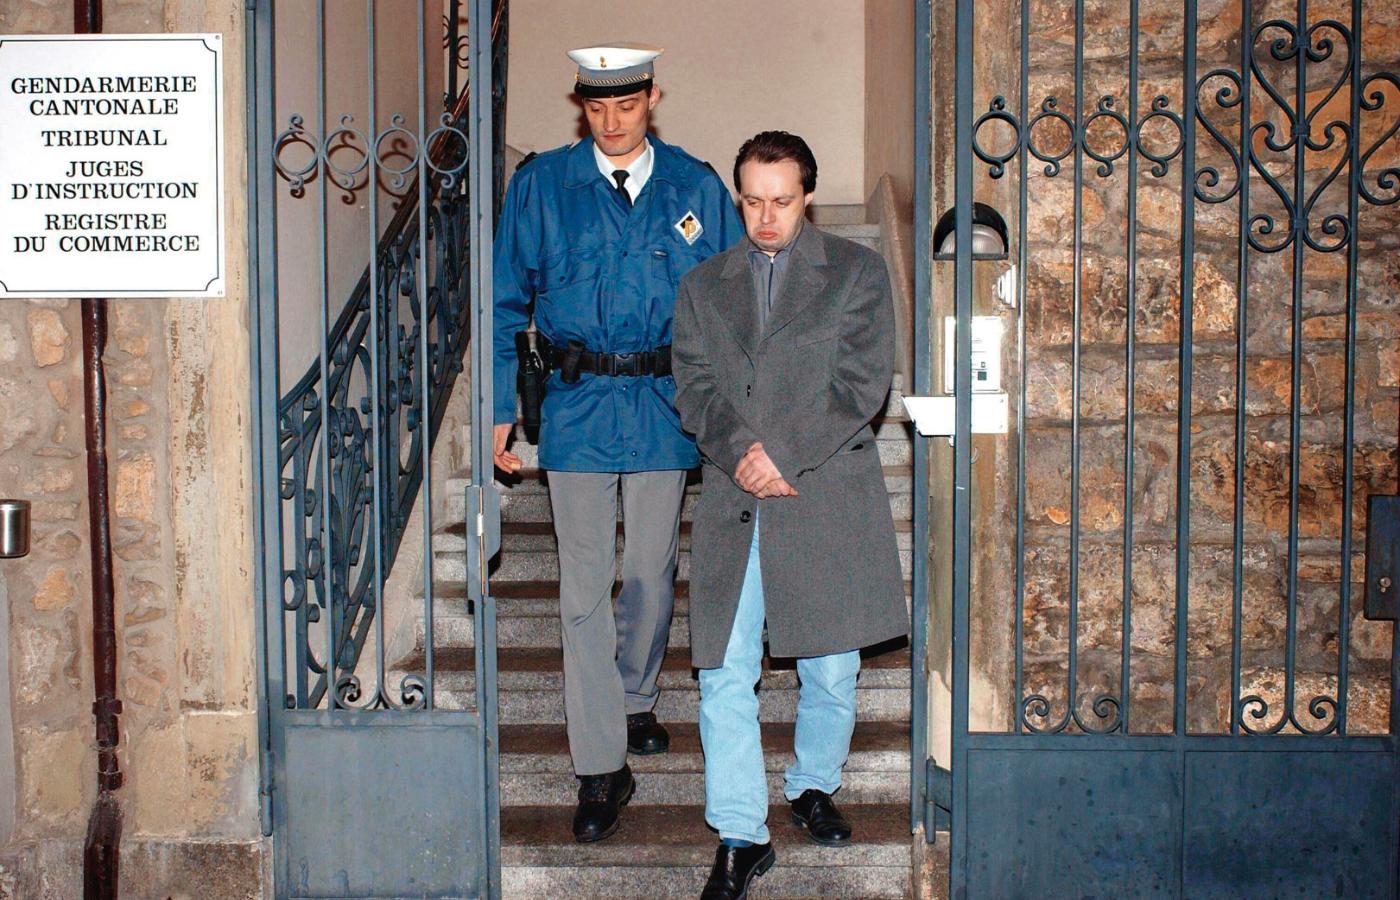 Stéphane Breitwieser, który przyznał się do kradzieży 239 dzieł sztuki o wartości ok. 1,4 mld dolarów. Ujęty w 2001 r., na kilka lat trafił do więzienia.